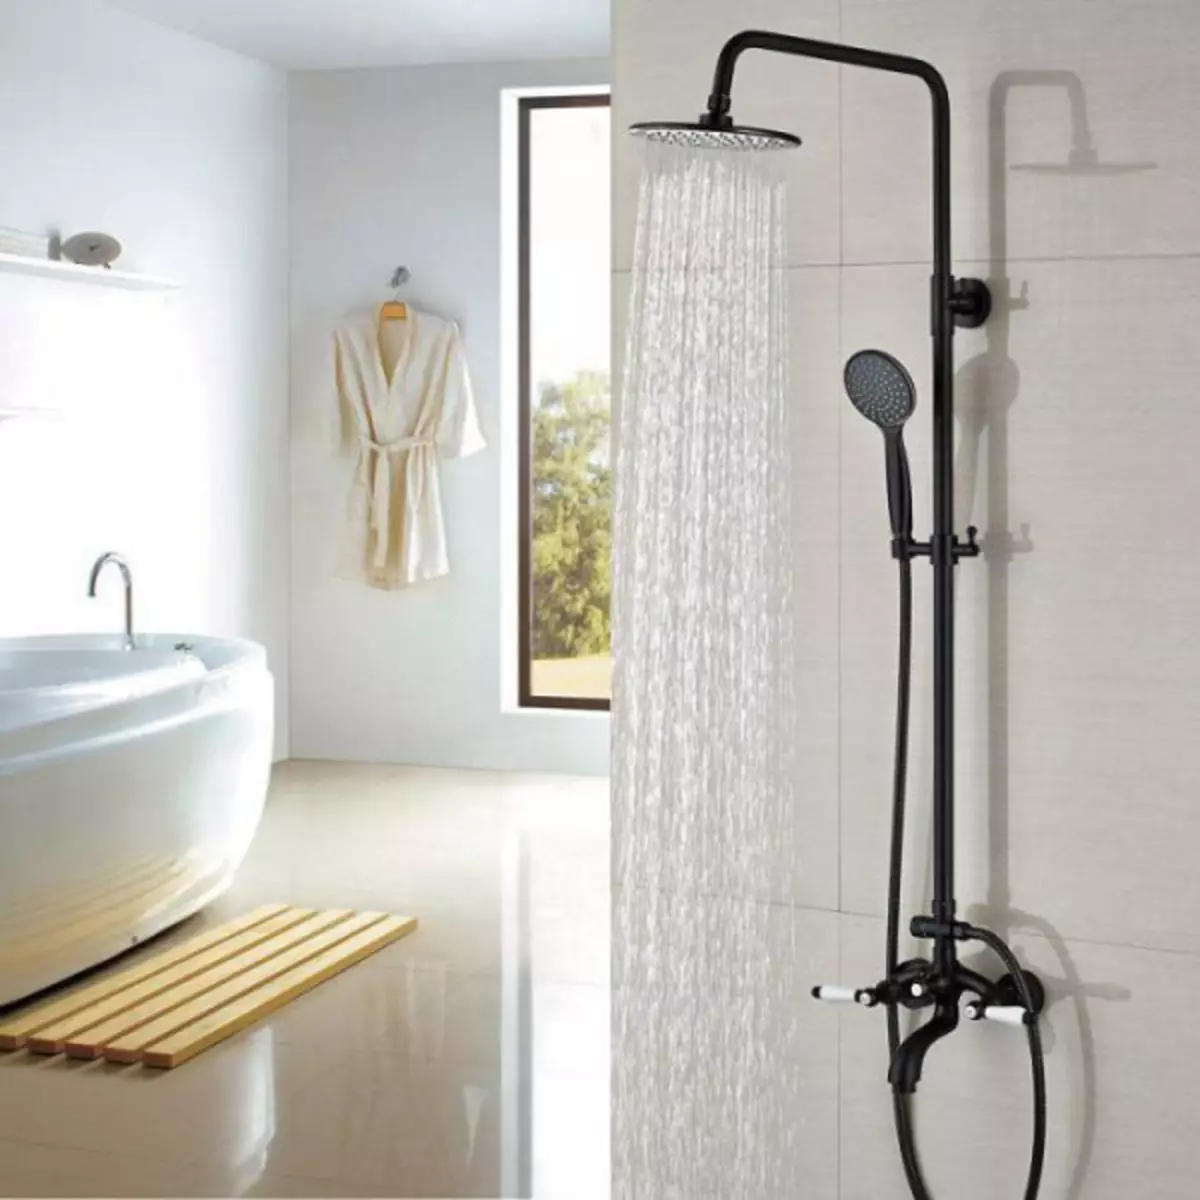 A keverő magassága a fürdőszobában a padlóról: Standard értékek